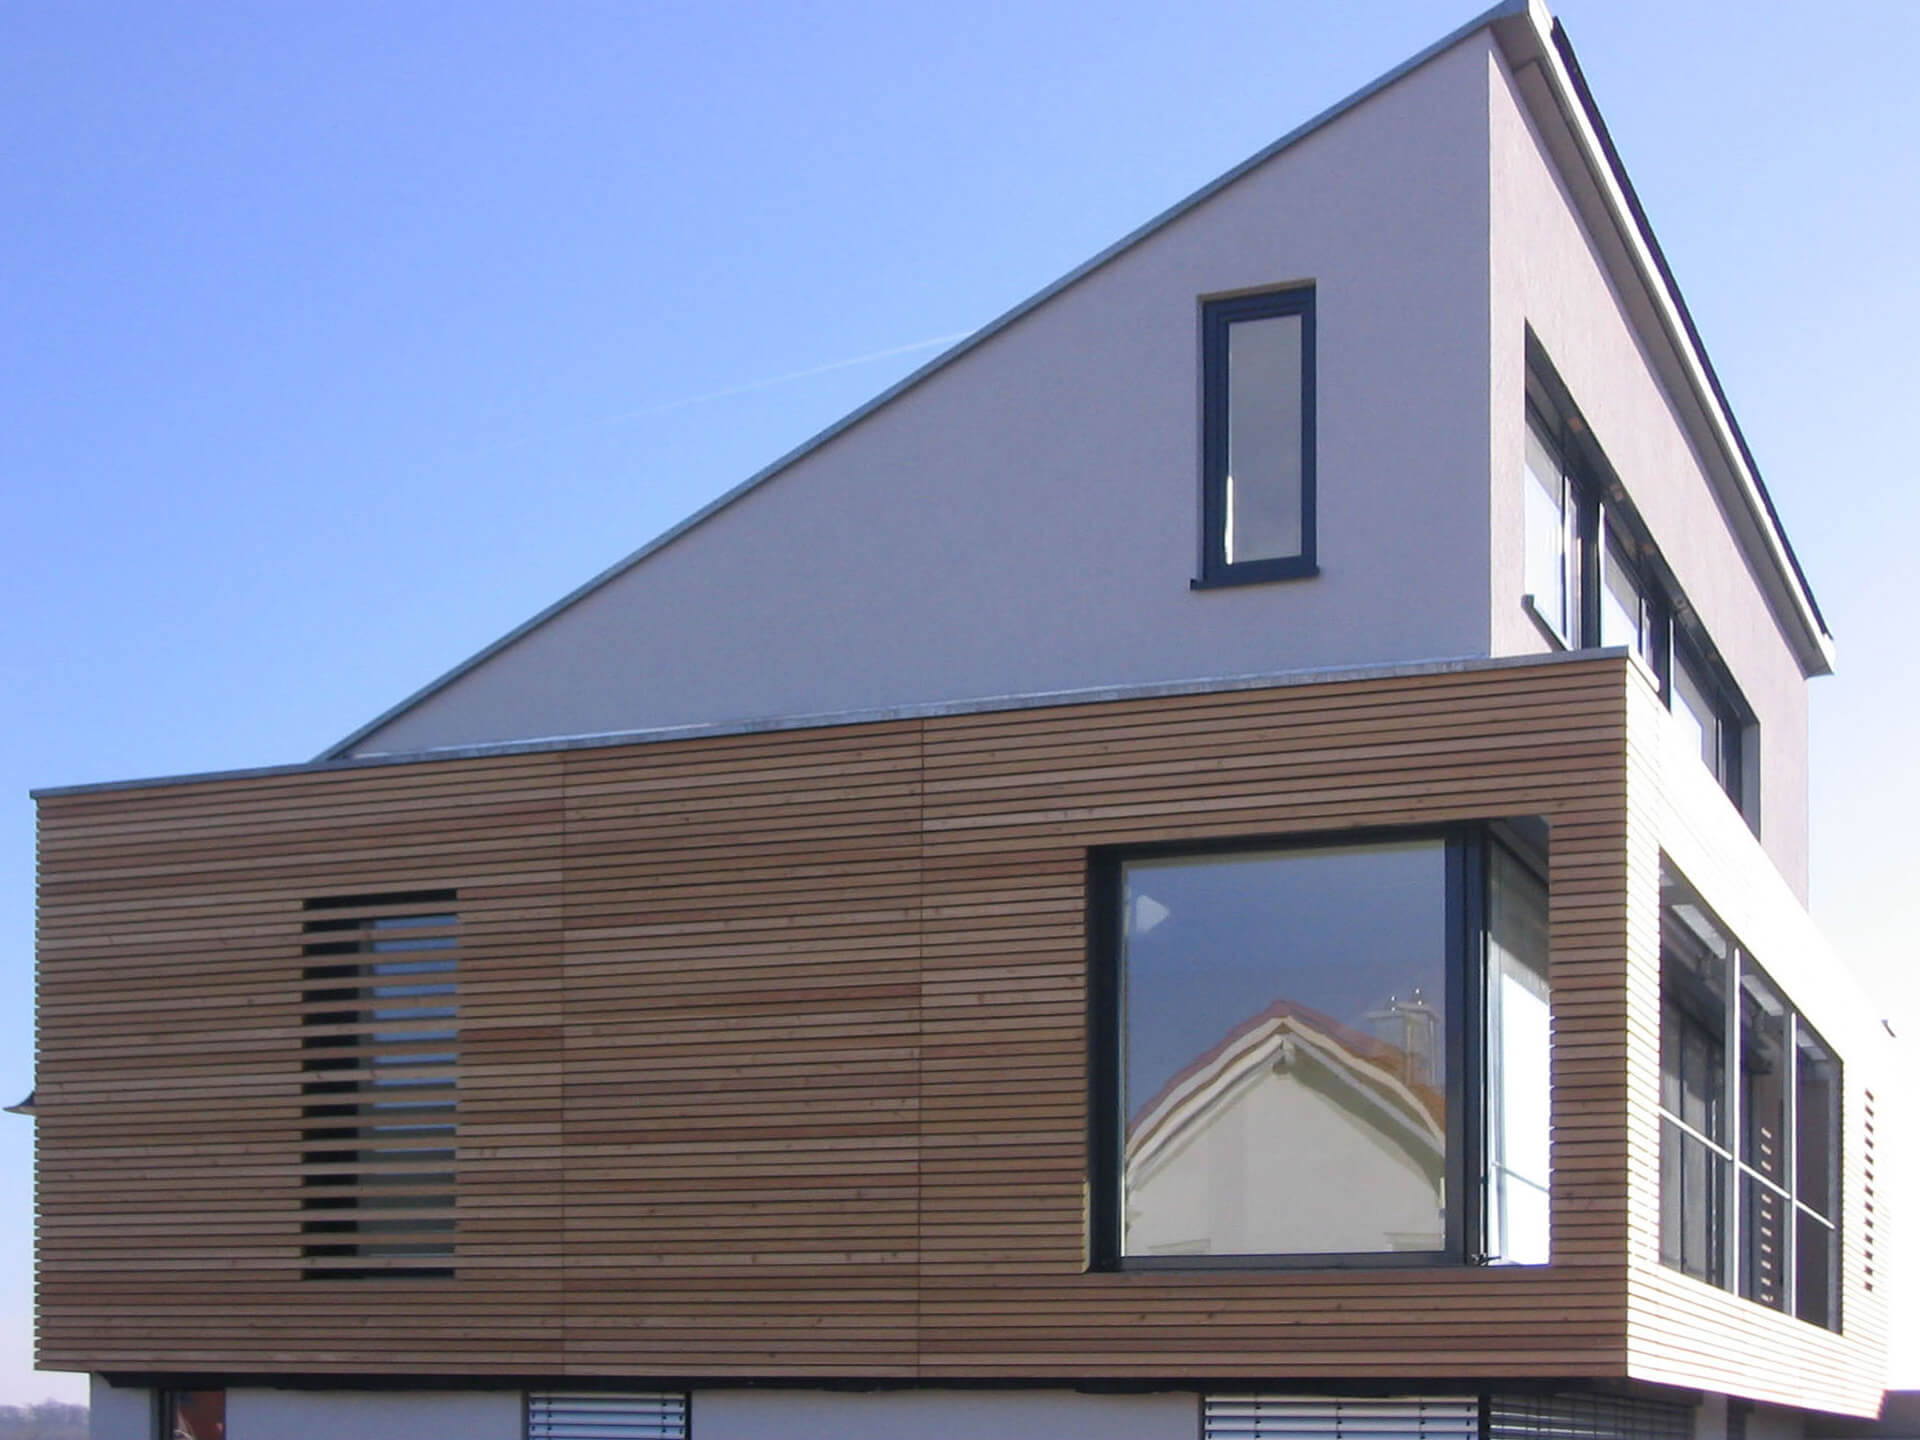 Holz-Alu-Fenster - Wertig und formschön